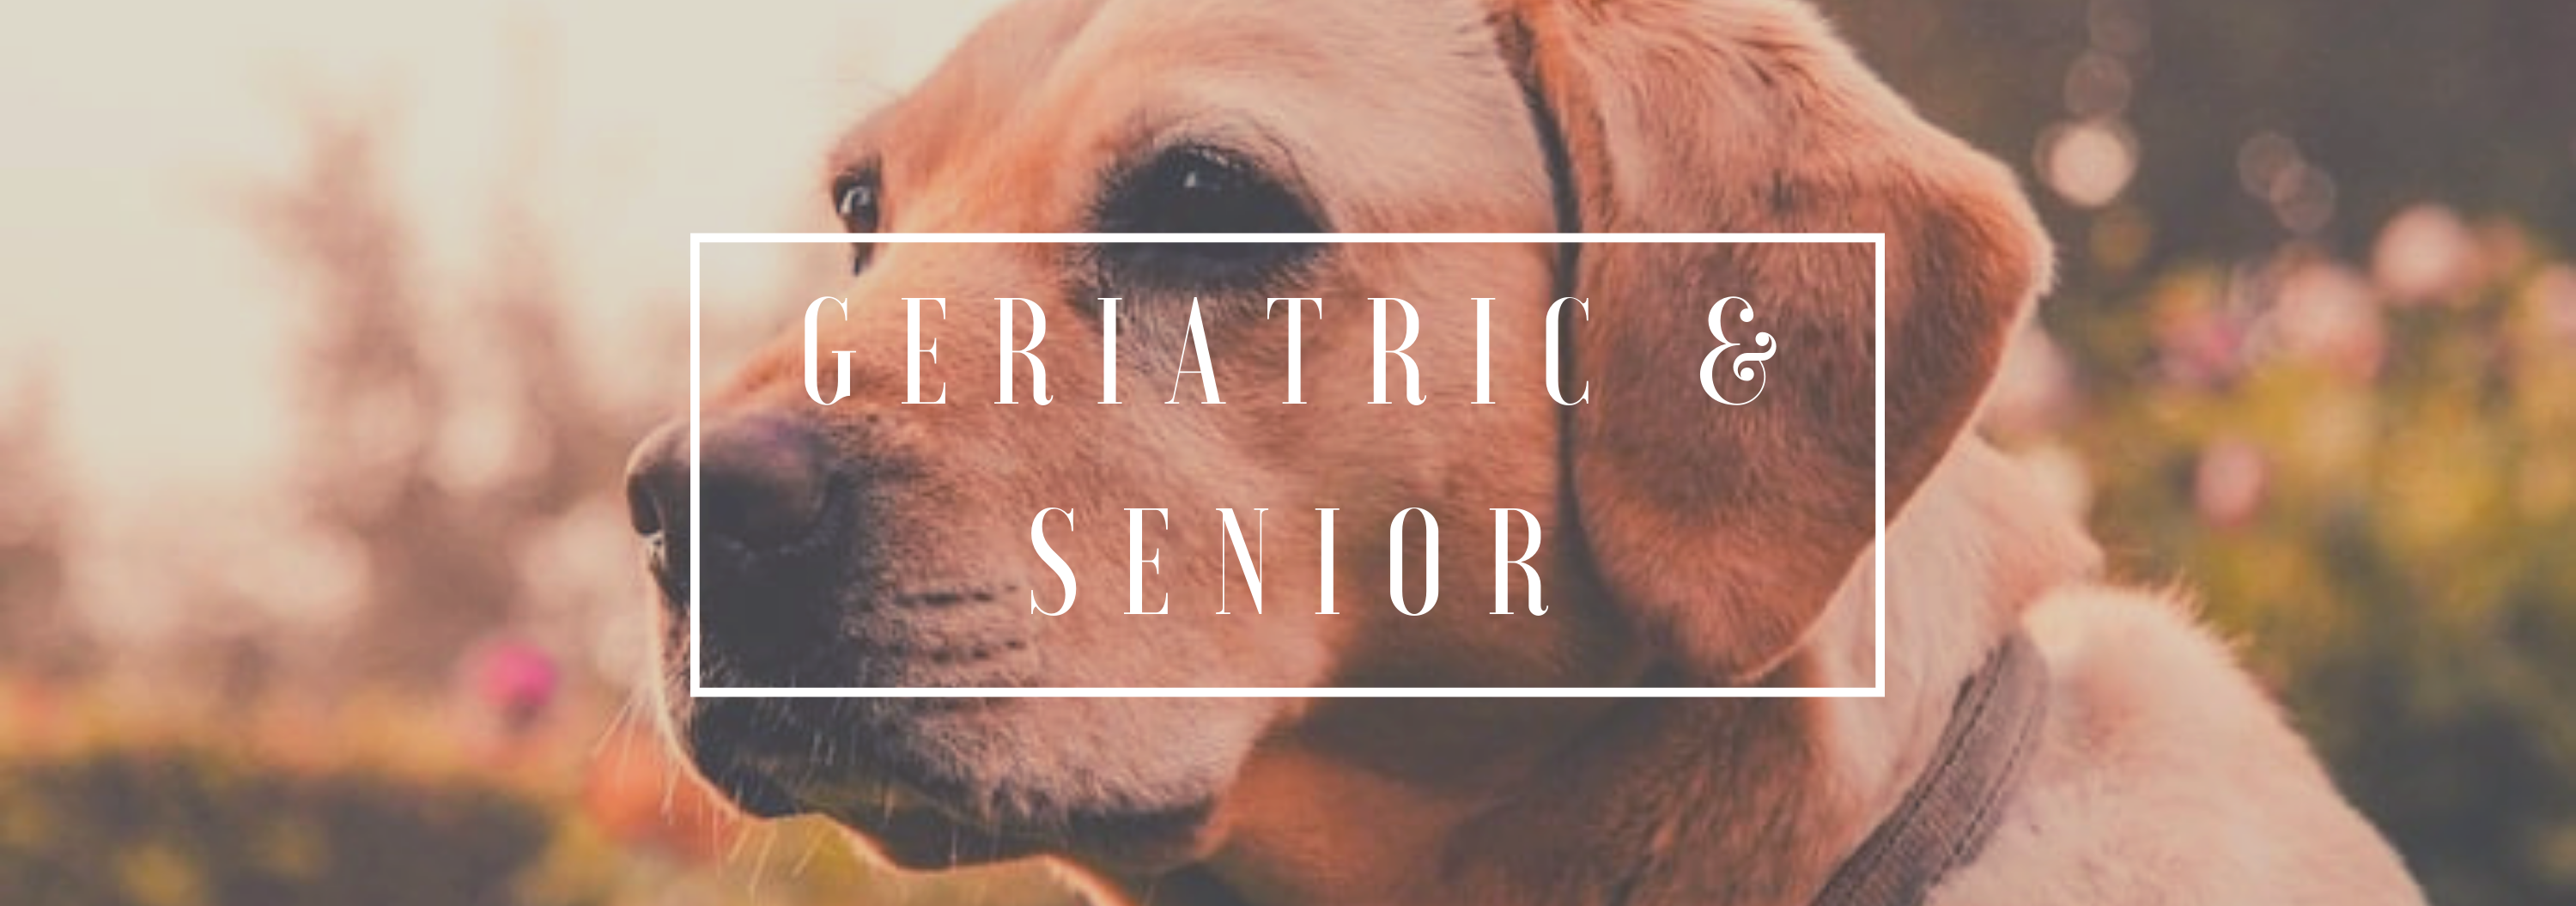 geriatric & senior pet care